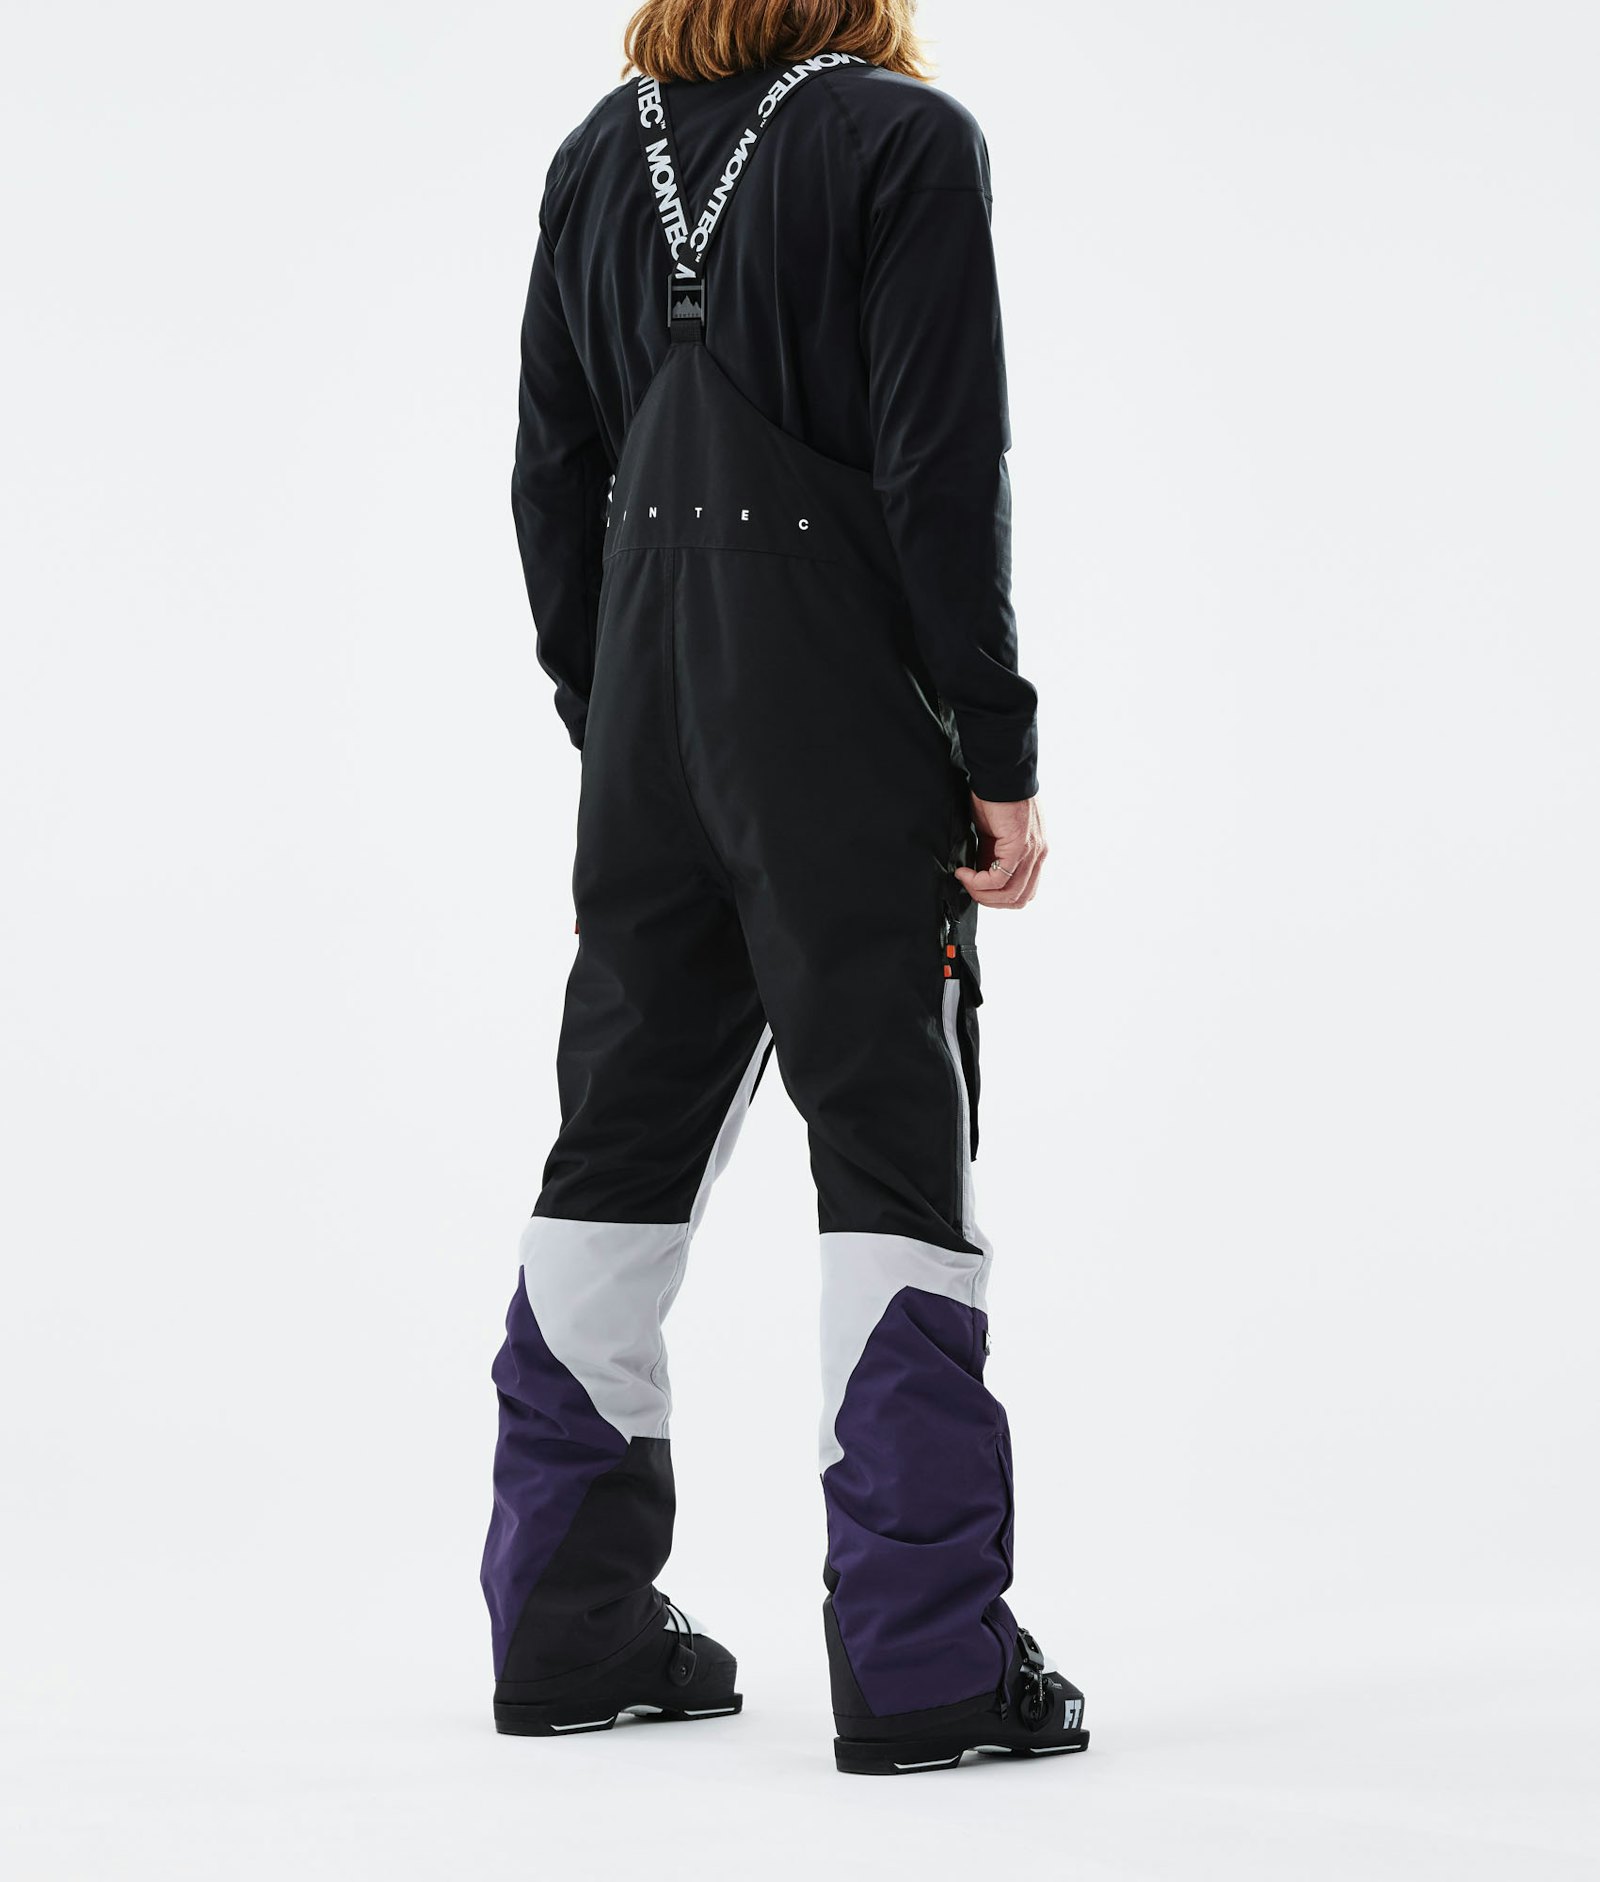 Montec Fawk 2021 Pantaloni Sci Uomo Black/Light Grey/Purple